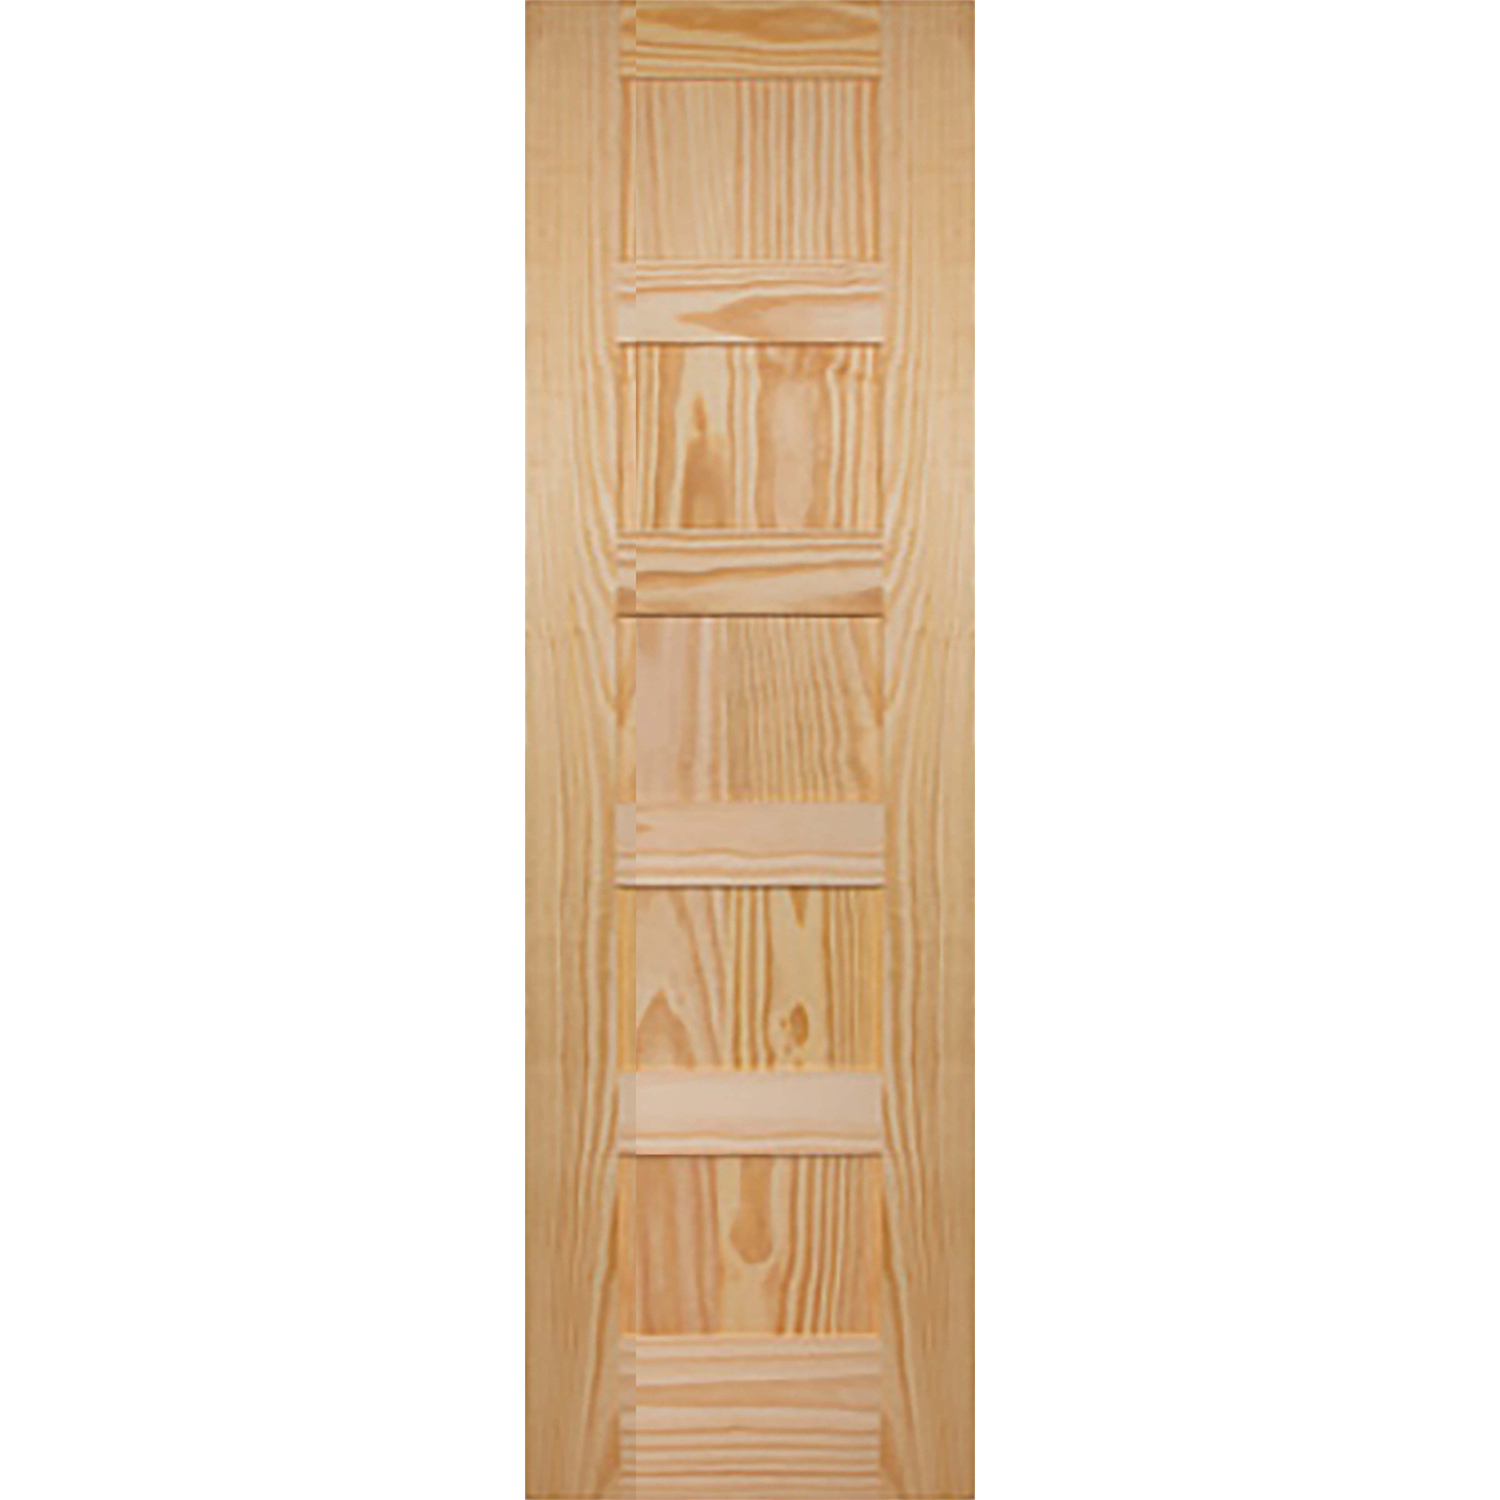 5 Panel 24 x 80 x 1 3/8 - Knotty Pine Door Shaker